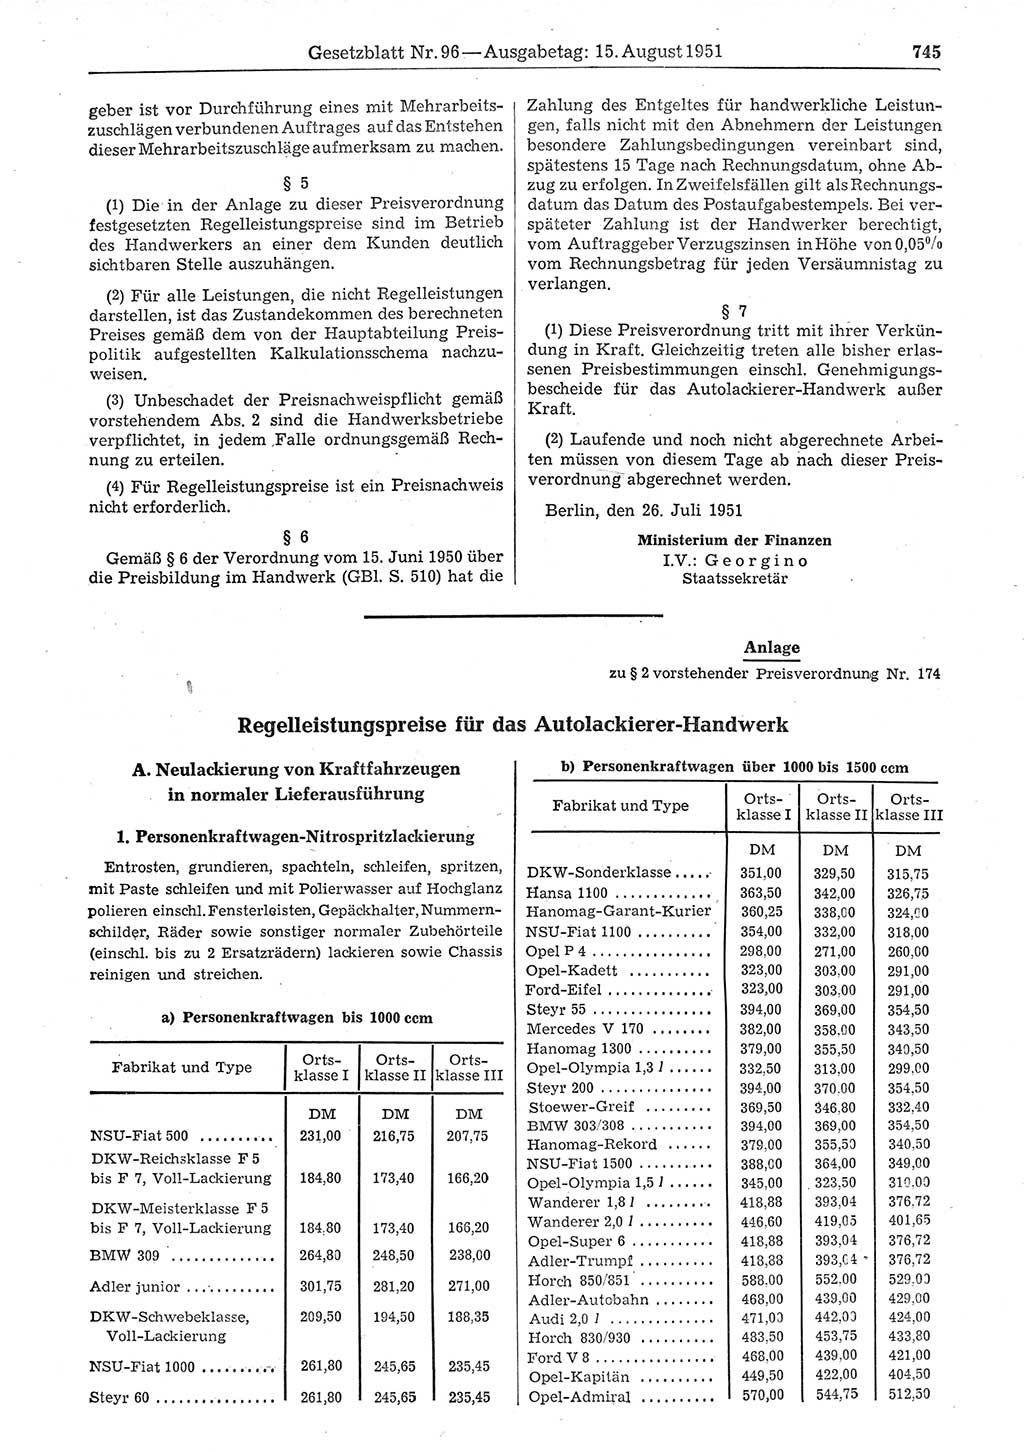 Gesetzblatt (GBl.) der Deutschen Demokratischen Republik (DDR) 1951, Seite 745 (GBl. DDR 1951, S. 745)